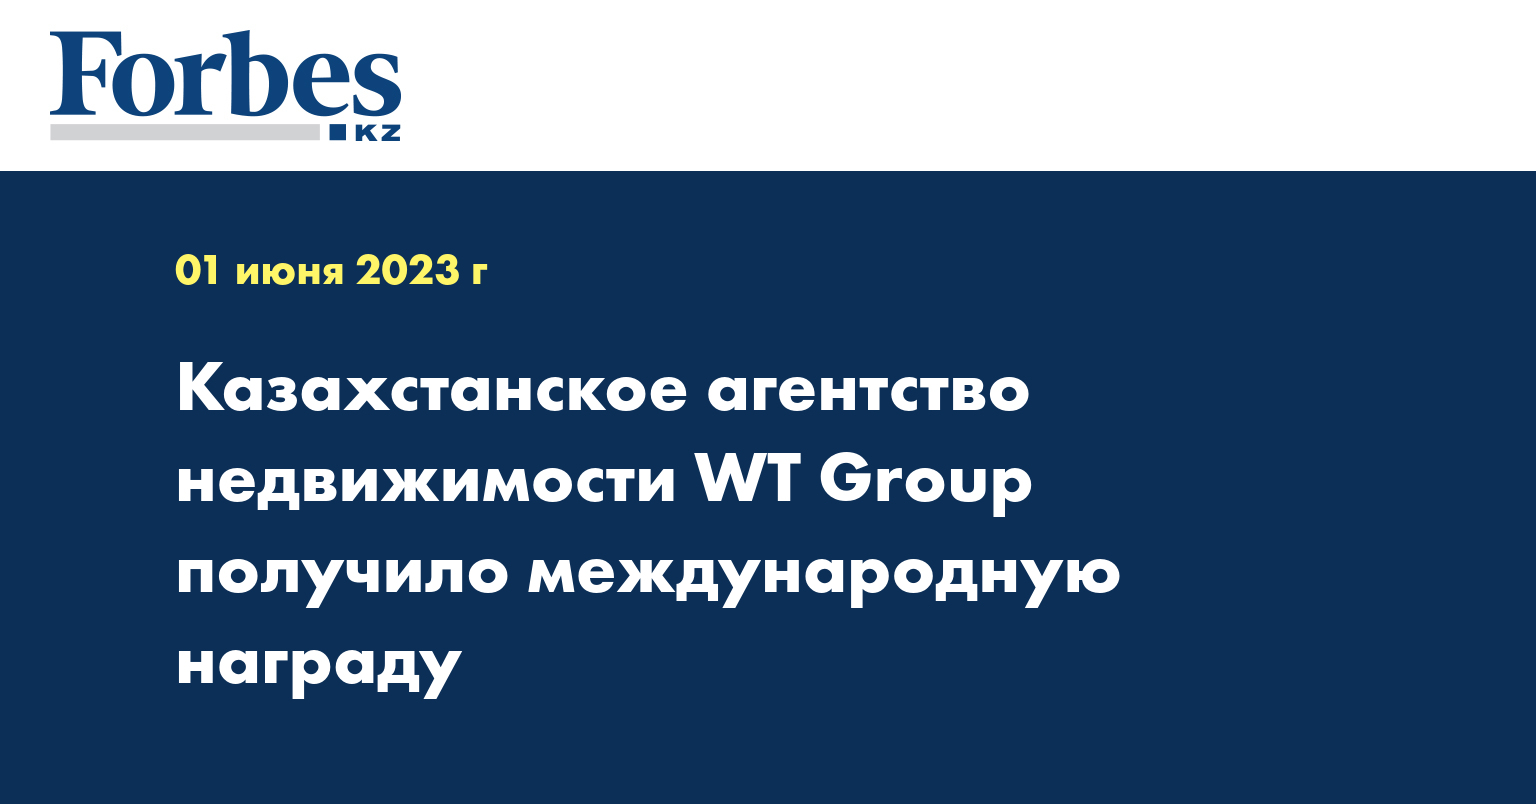 Казахстанское агентство недвижимости WT Group получило международную награду 